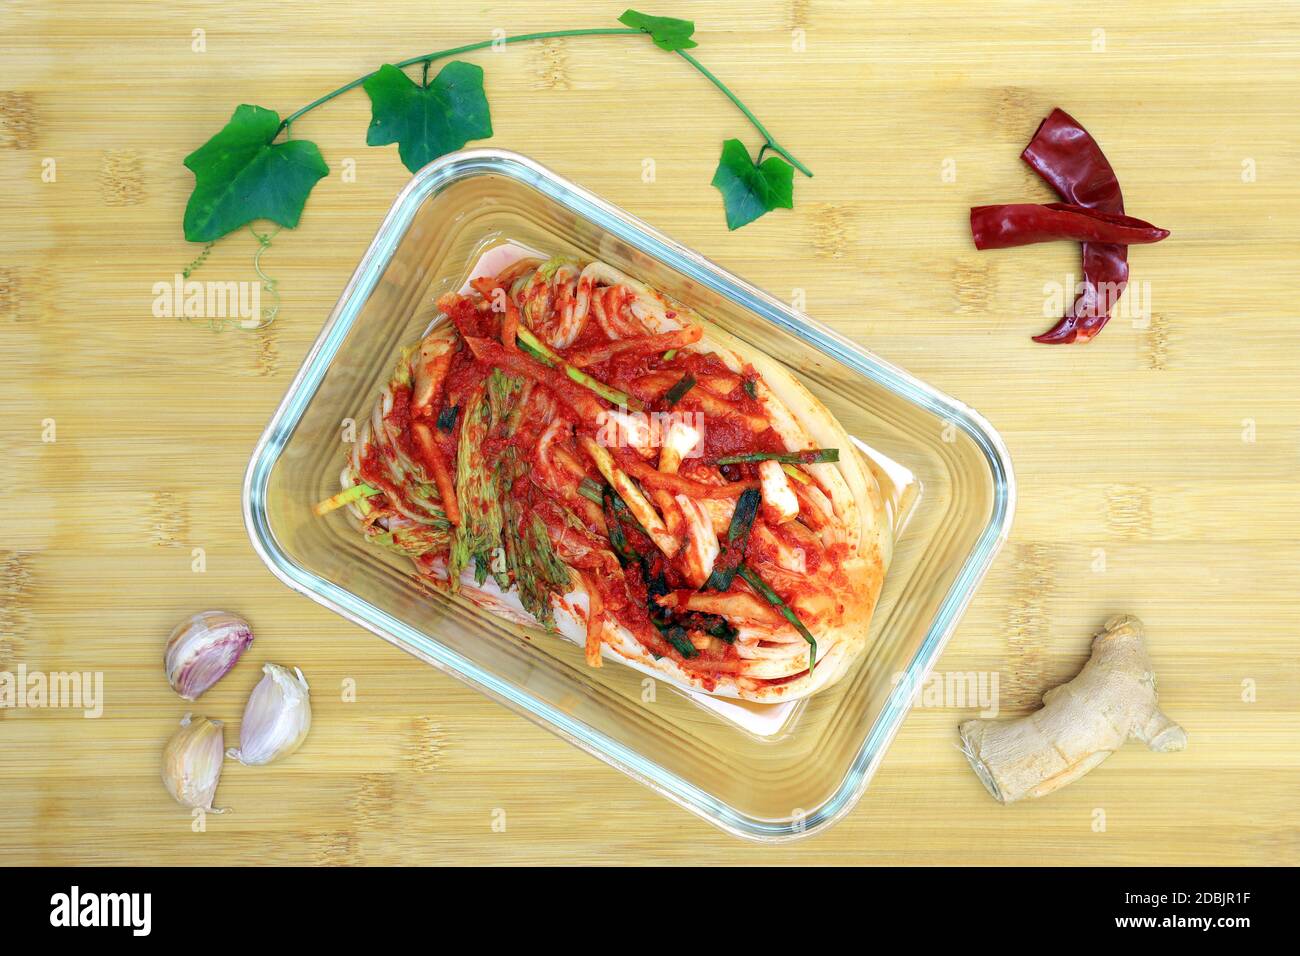 Il kimchi è il nome delle verdure sottaceto coreane. Il kimchi nella foto è fatto di cavolo cinese, aspero, dolce e leggermente piccante. Può essere mangiato come Foto Stock